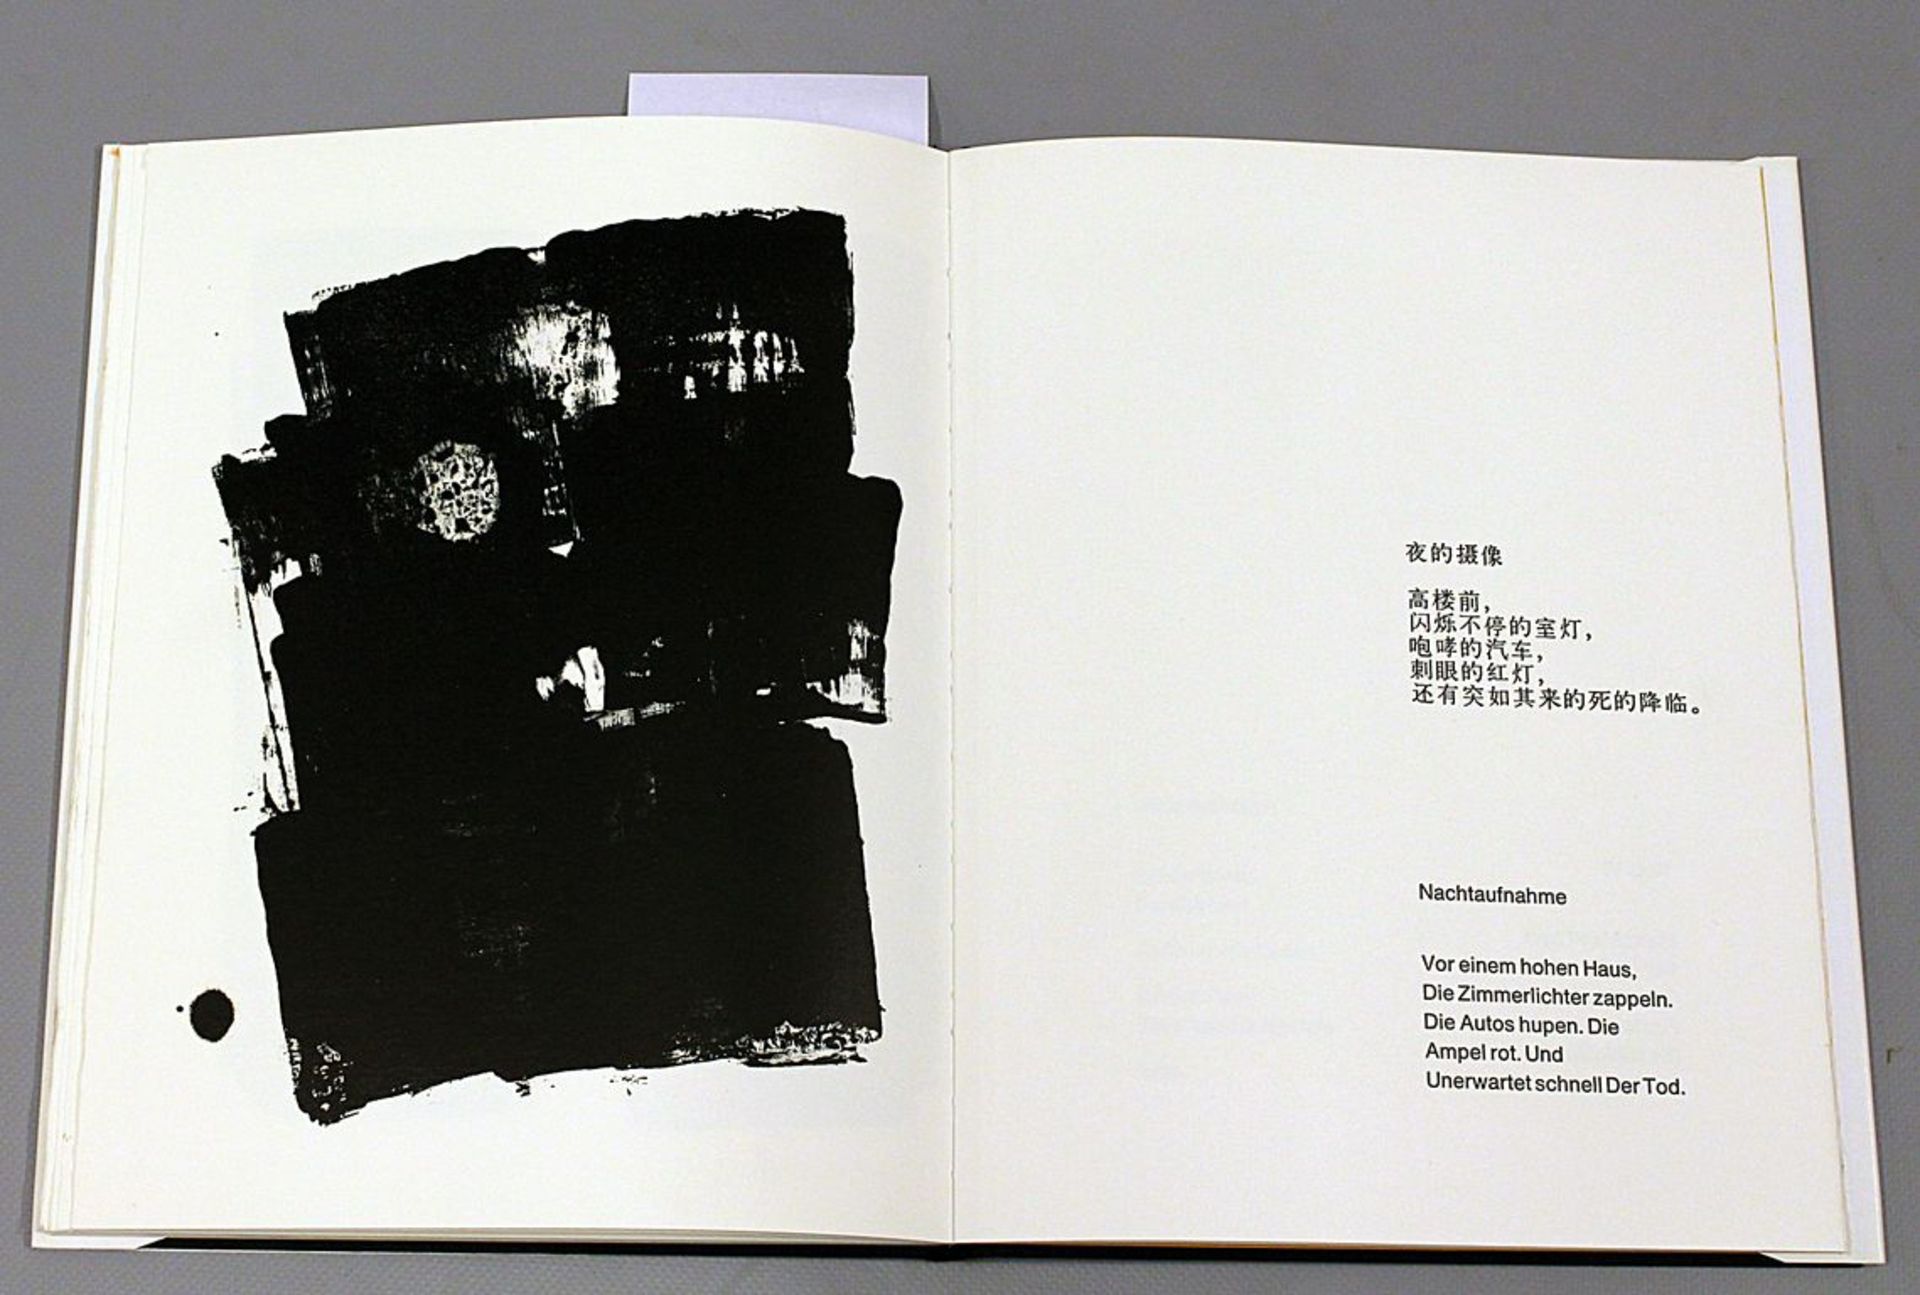 Künstlerbuch "Splittervögel schwebend", mit Lithographien von Jinshi Zhu (geb. 1954 Peking) und